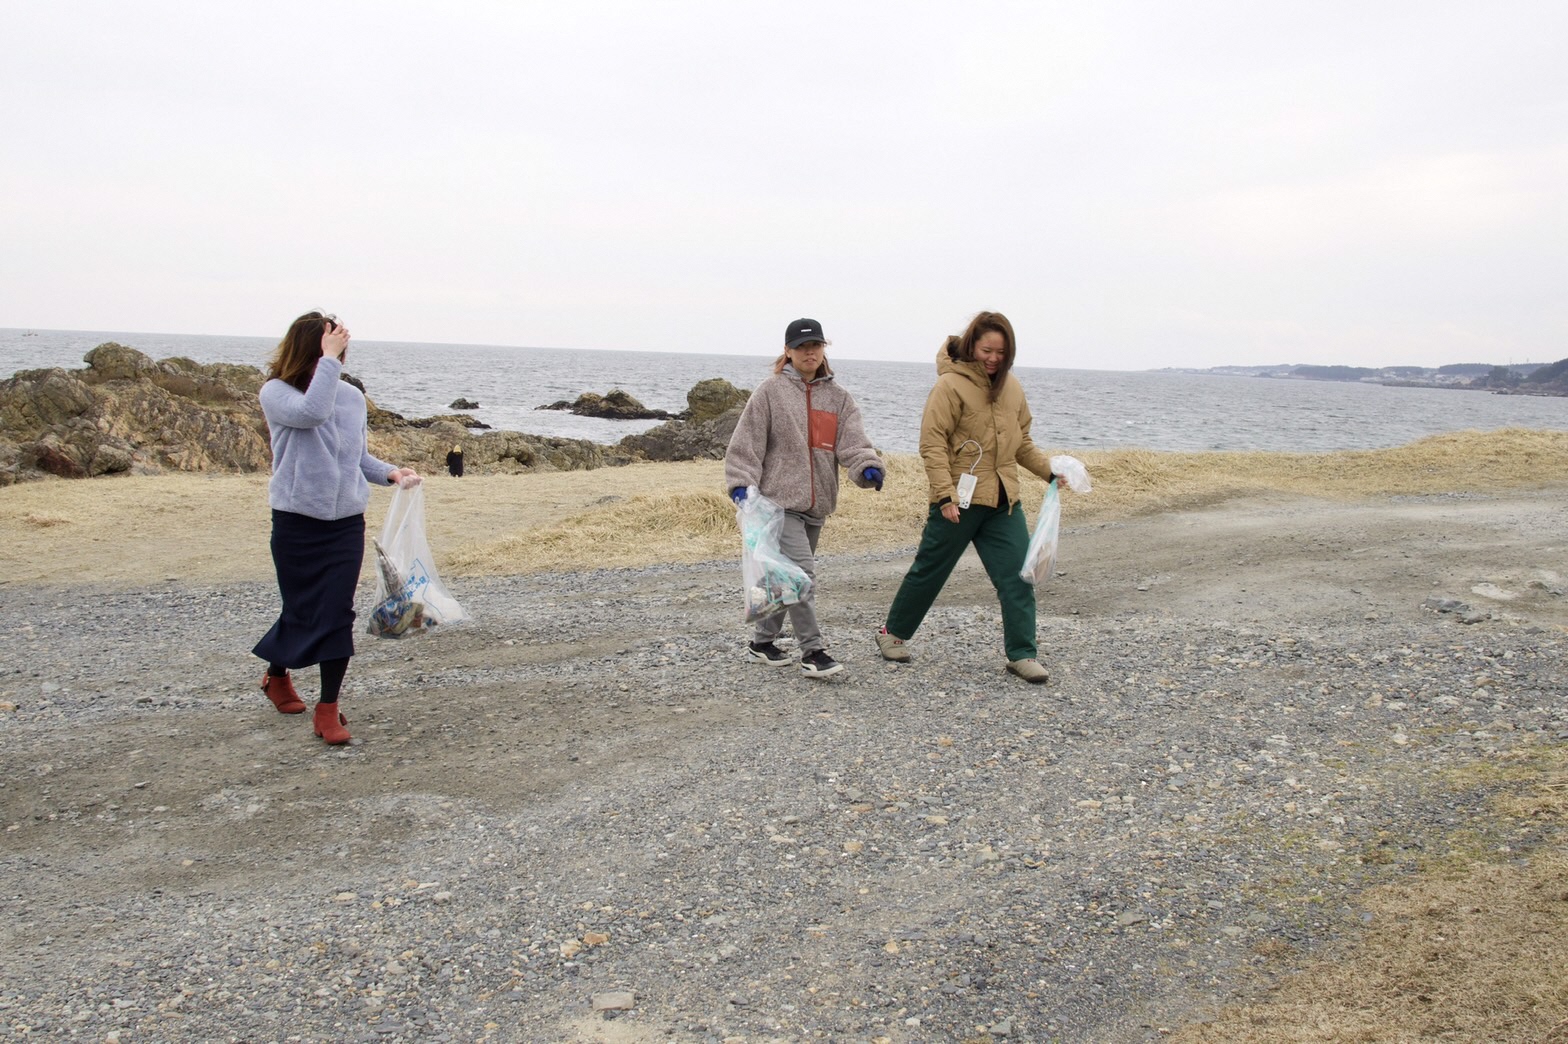 海岸のごみを入れたボランティア用ごみ袋を持って歩く女性3人の写真